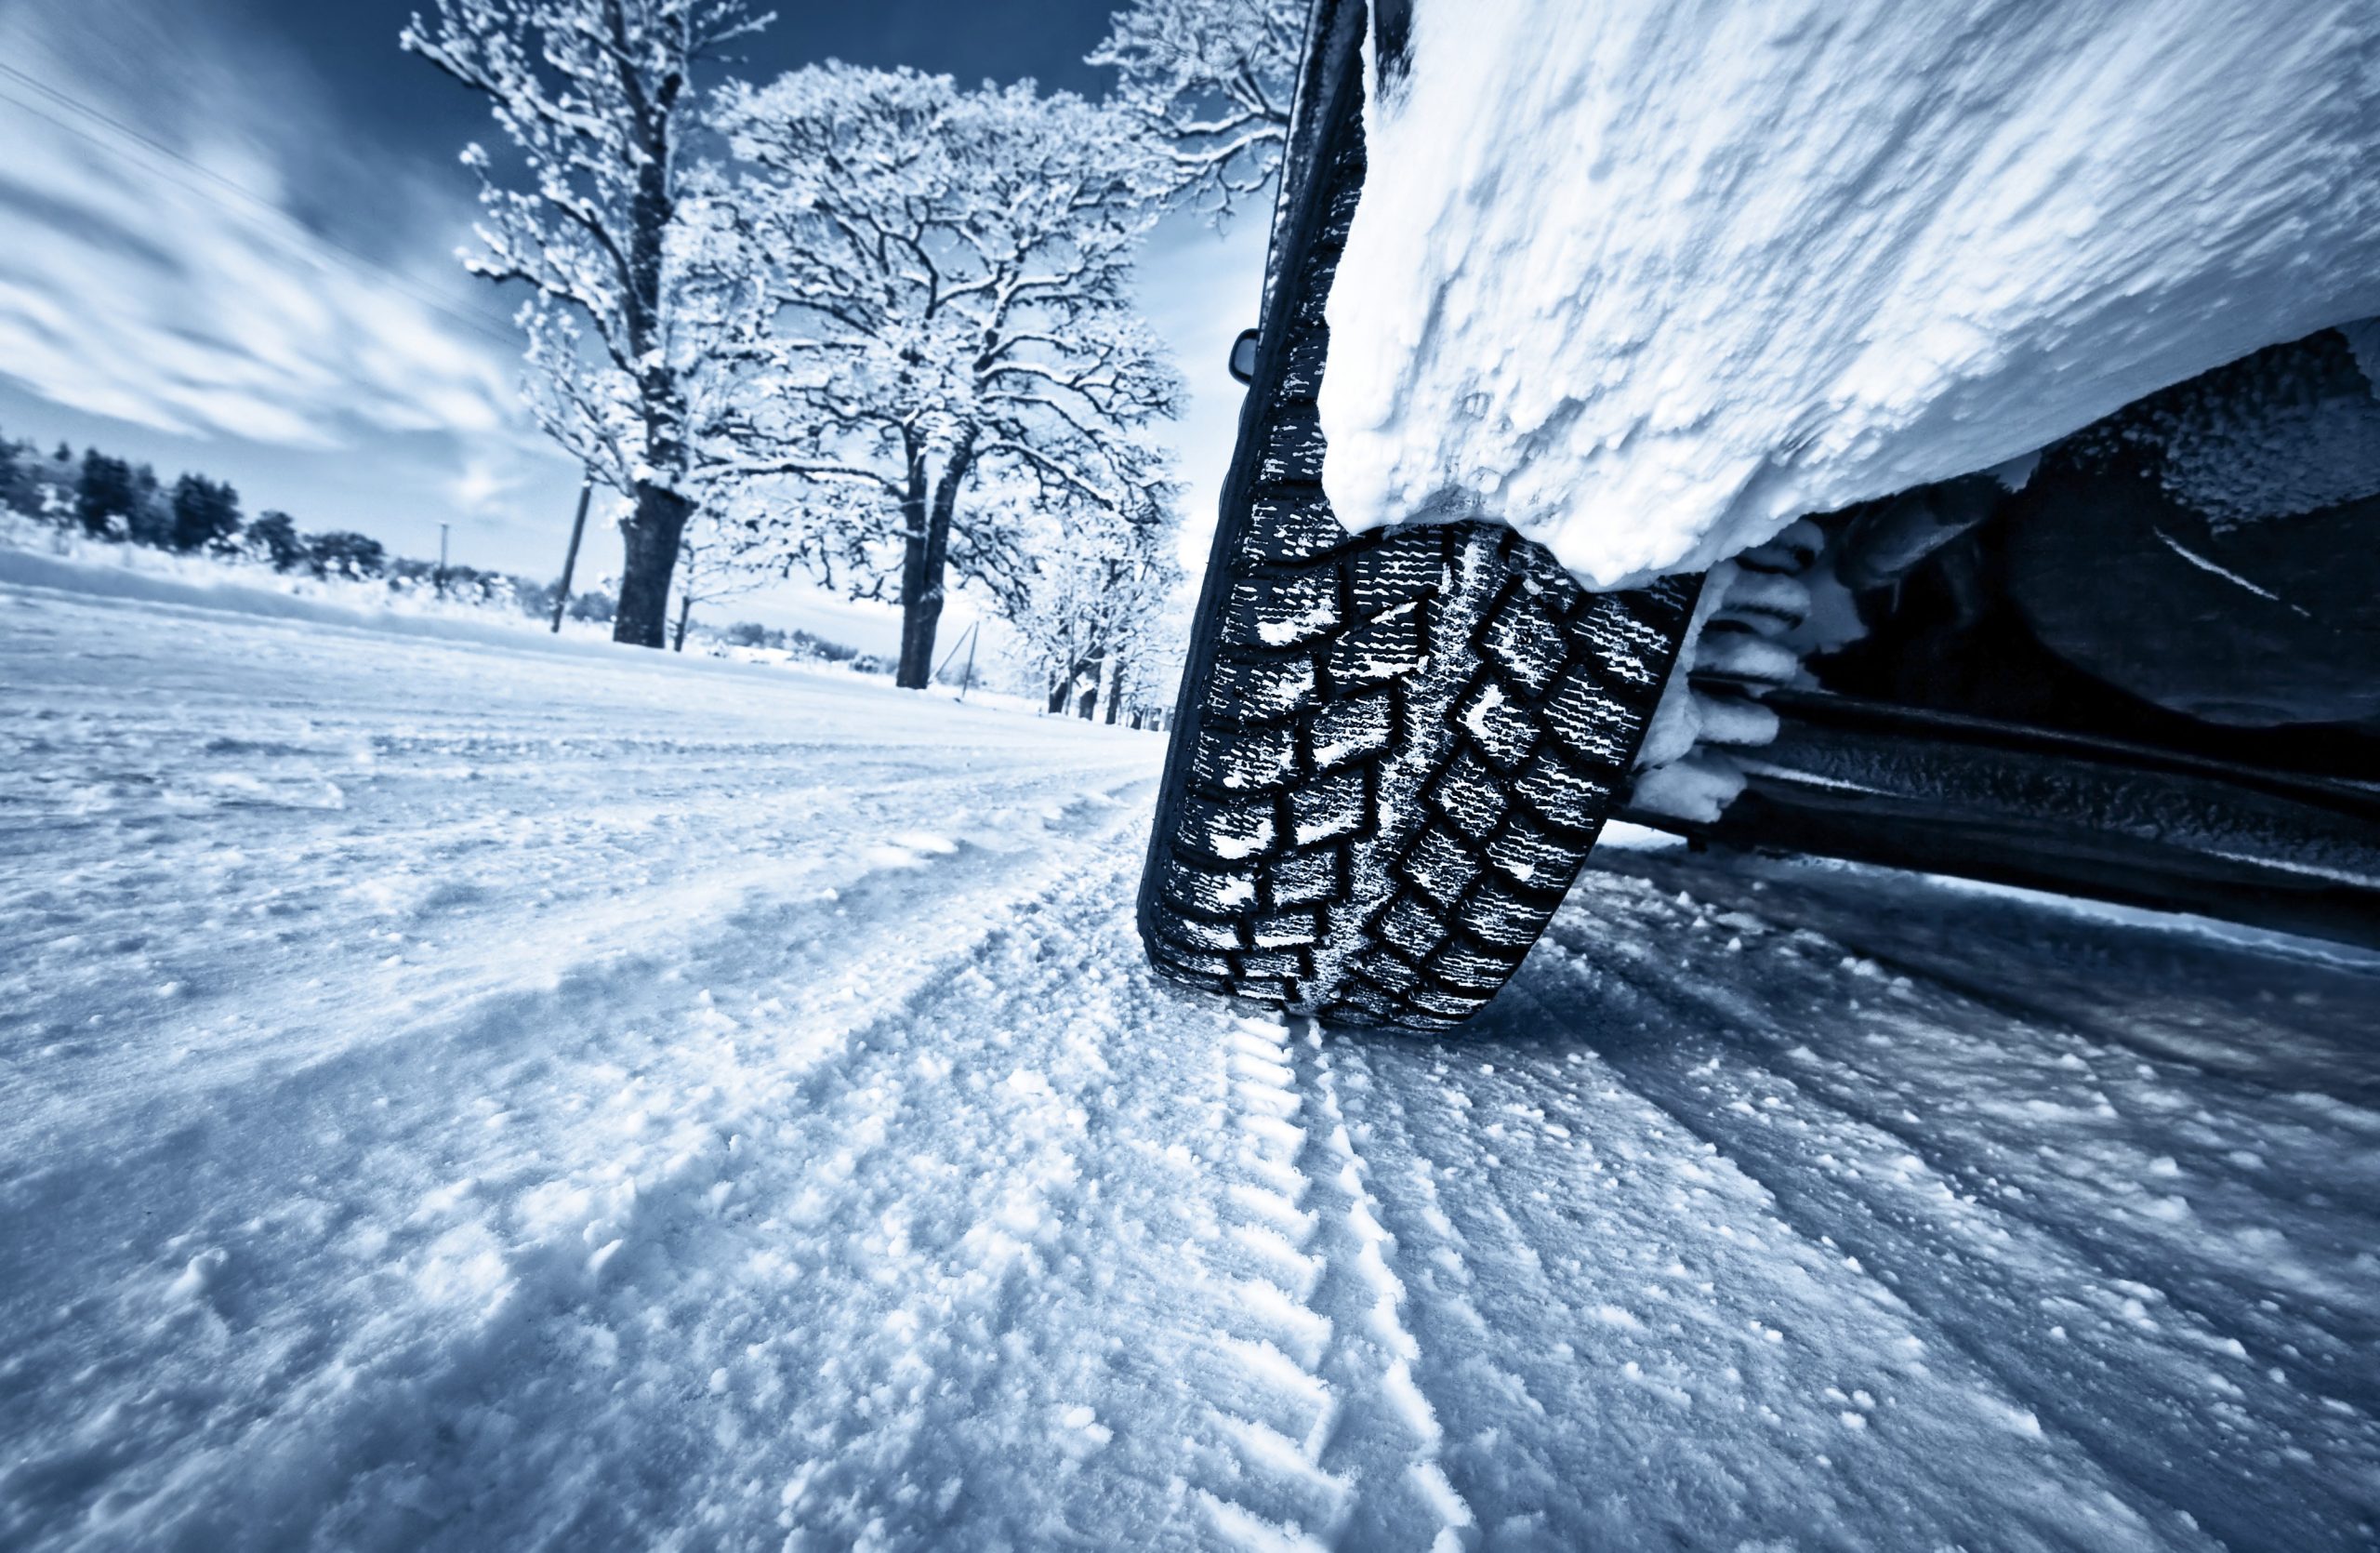 क्या आपकी कार विंटर टायर्स के साथ सर्दियों के लिए तैयार है?